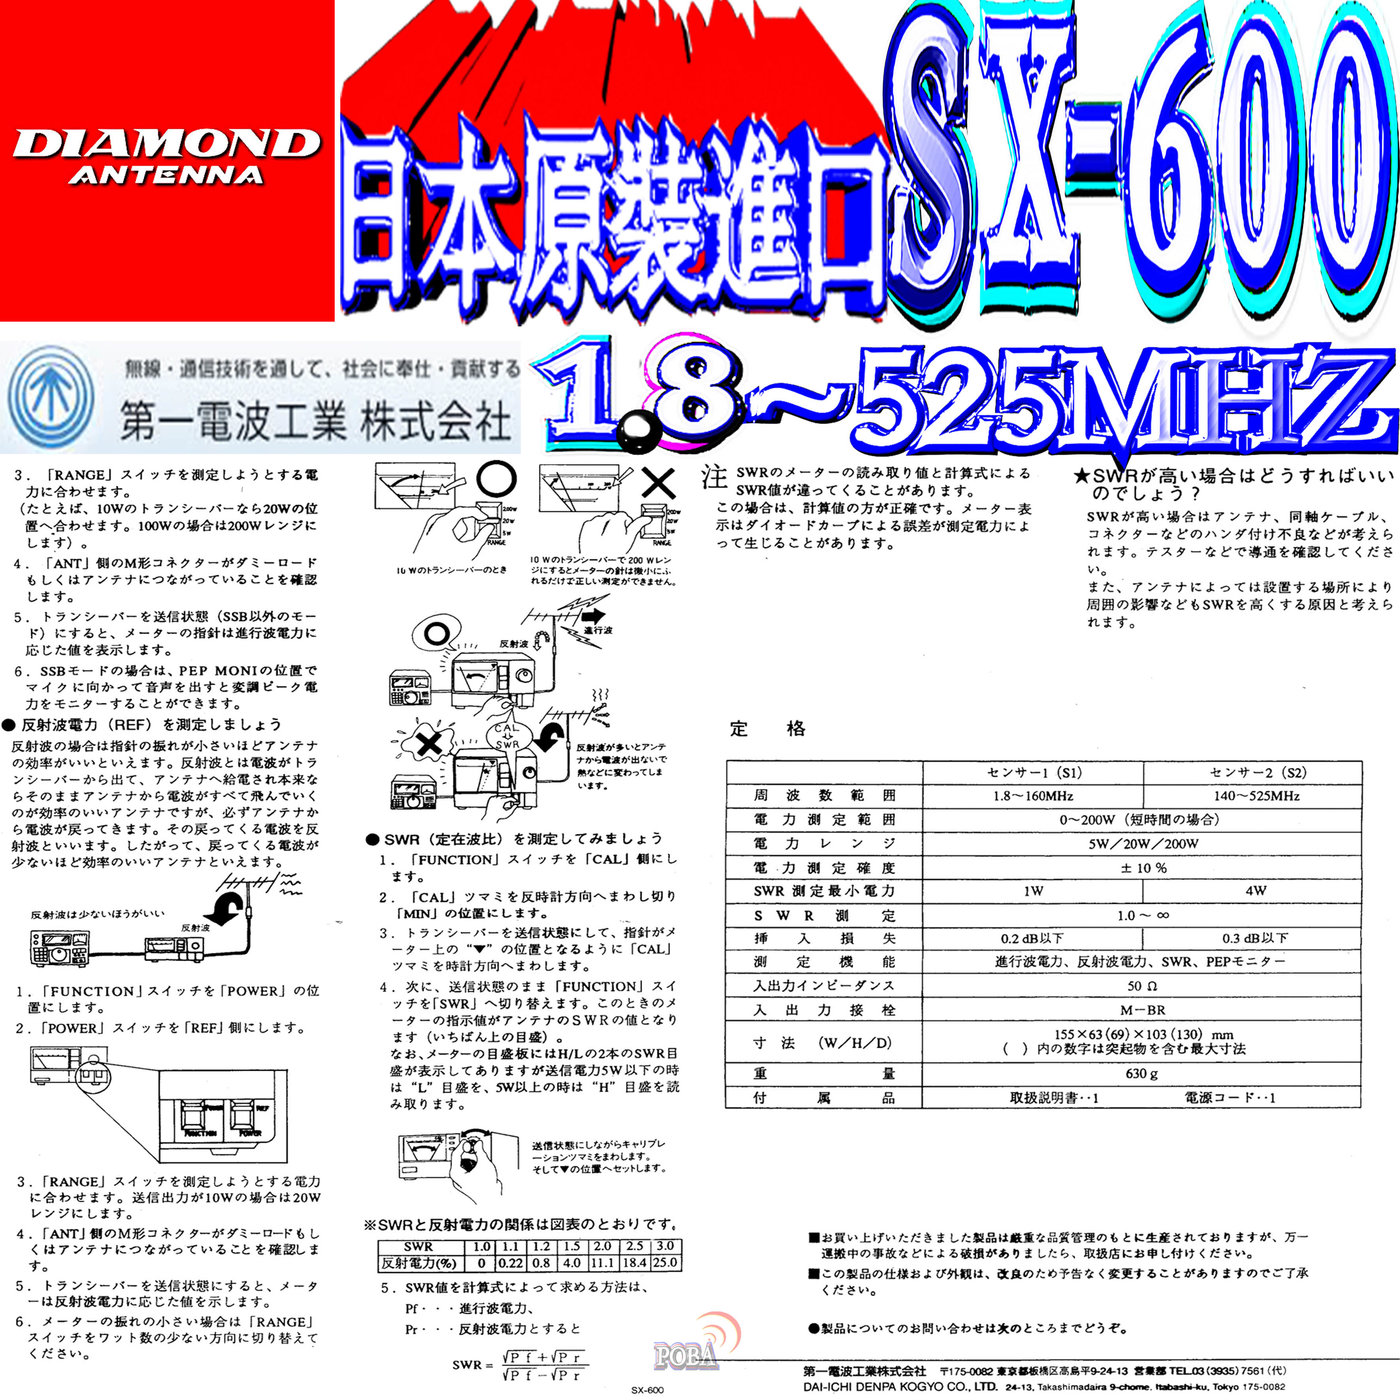 波霸無線 DIAMOND SX-600 駐波比錶日本第一電波1.8~525MHz 